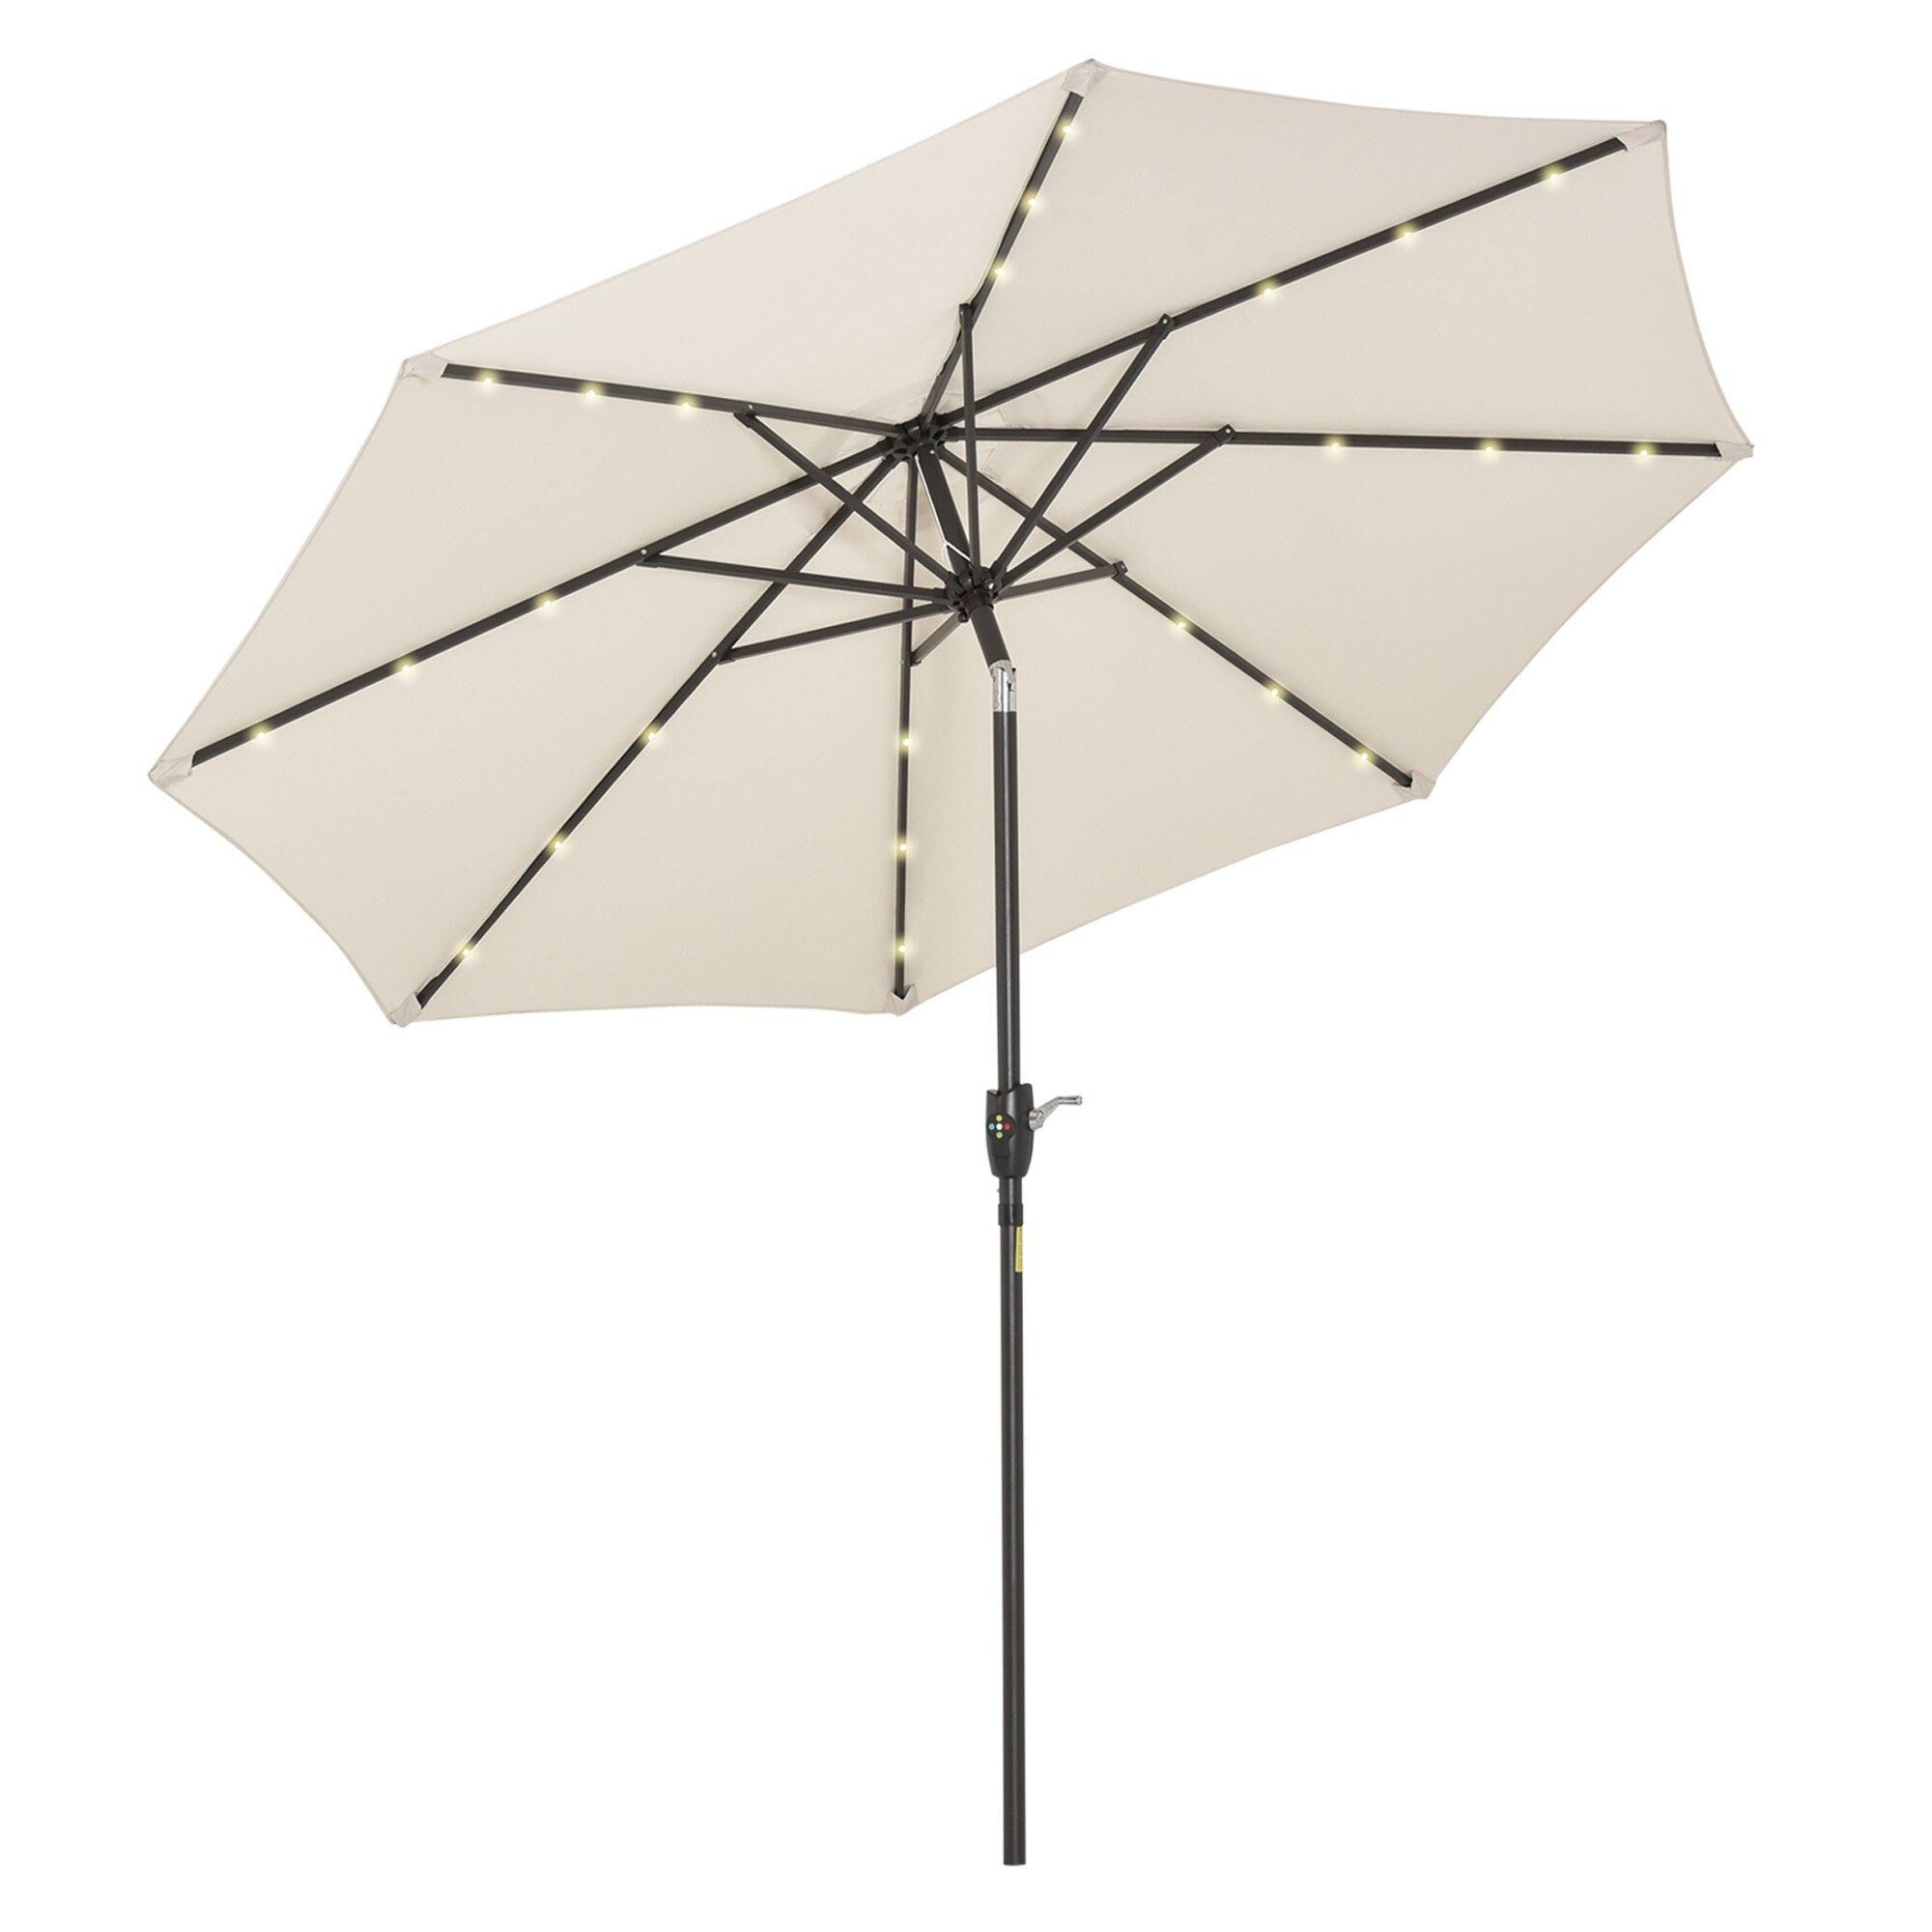 Outsunny Garden Parasol Outdoor Tilt Sun Umbrella LED Light Hand Crank